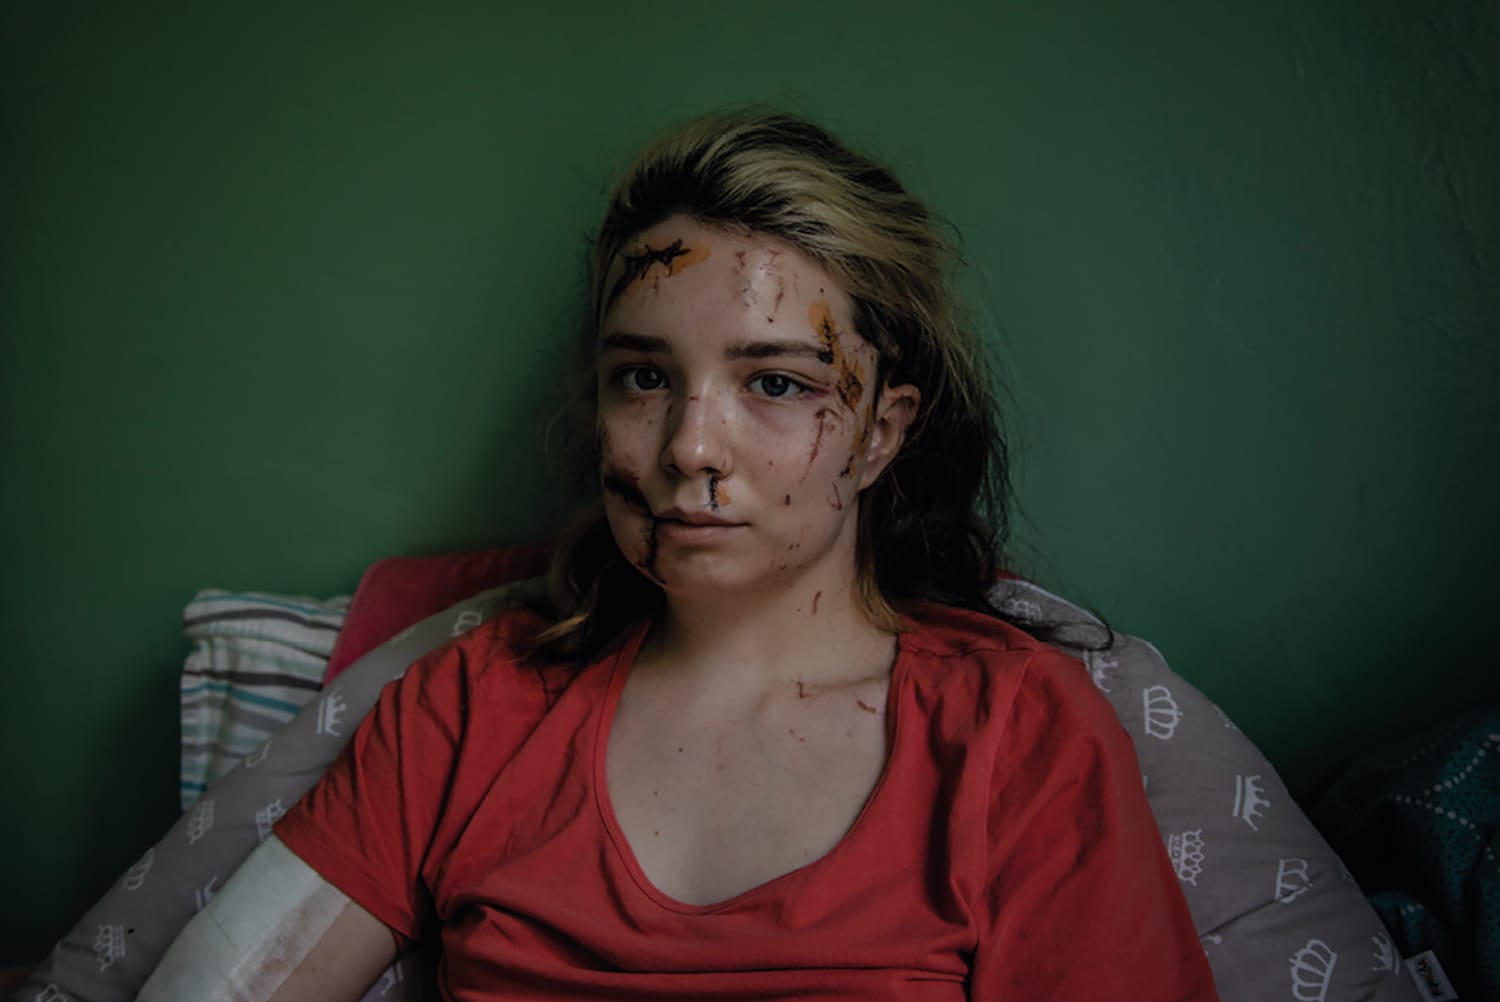 Bilde som viser kvinne med skader i ansiktet etter krig.